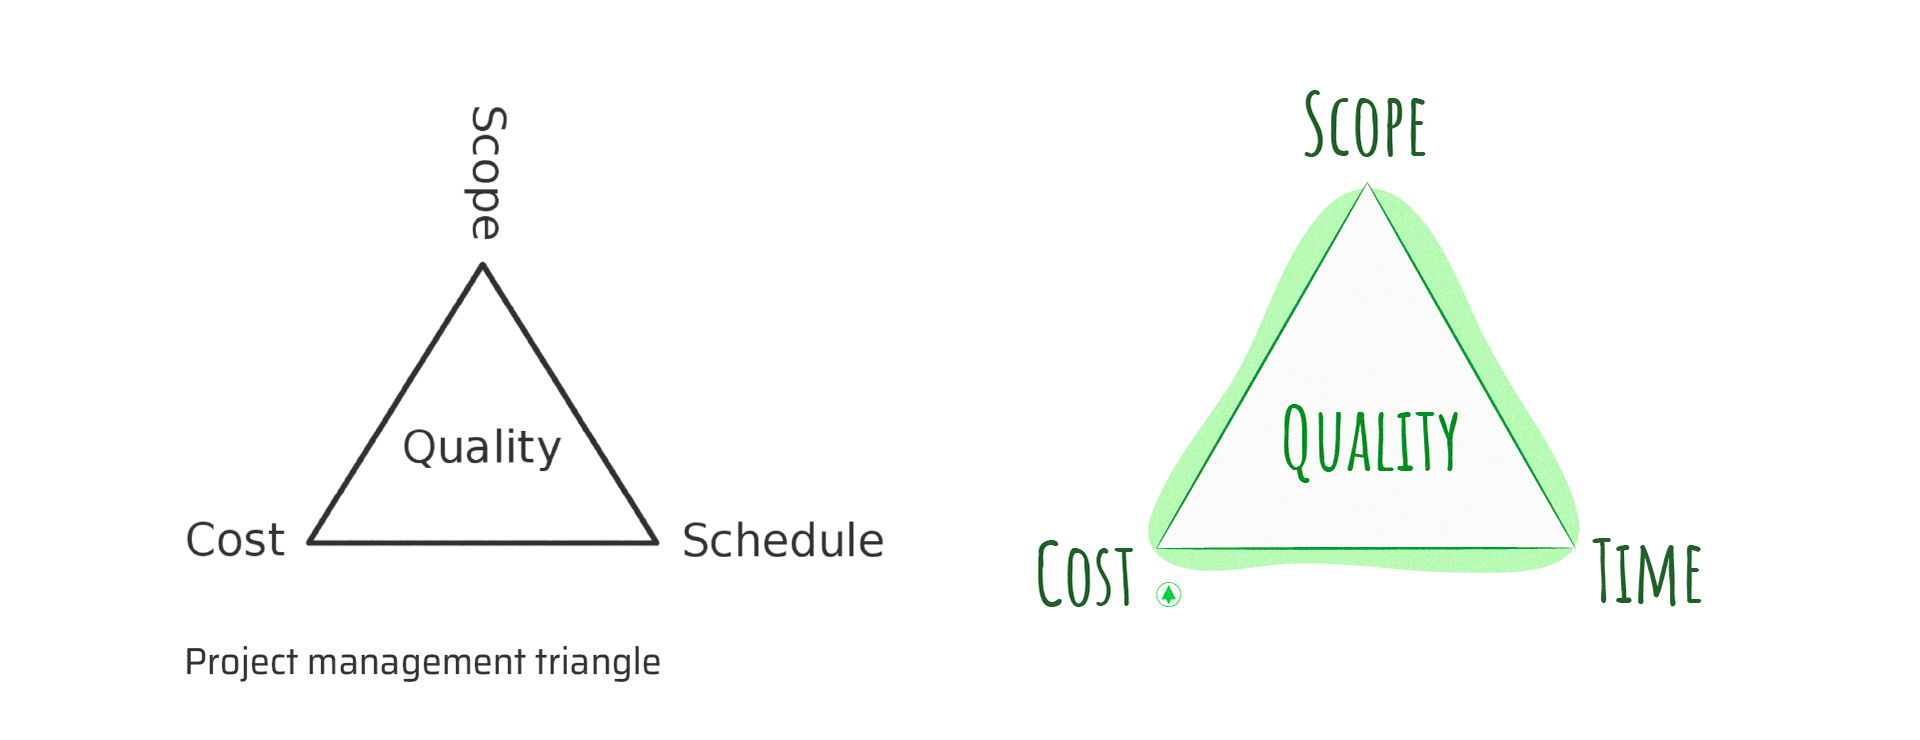 Triángulo del project management: Alcance, Costo y Tiempo como aristas